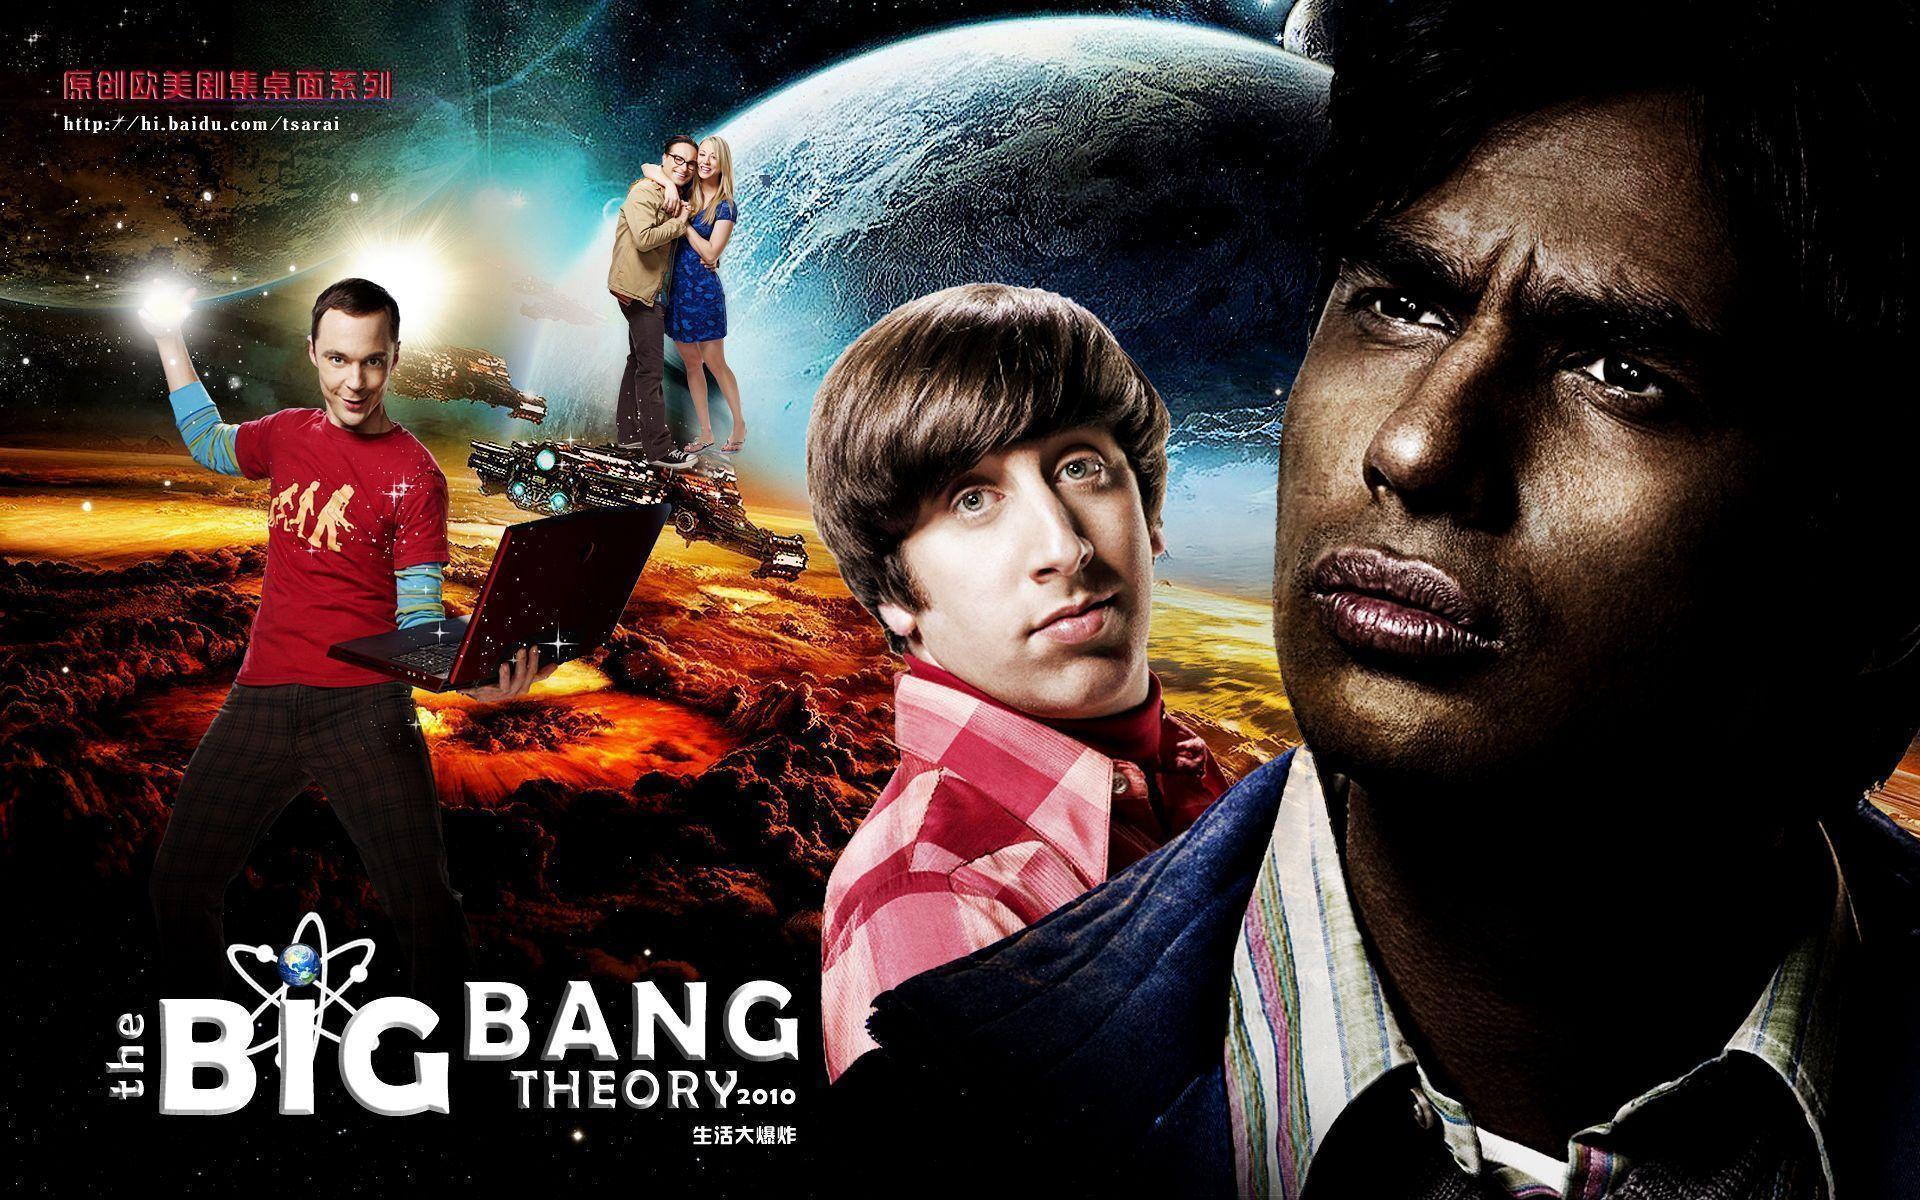 Big Bang Theory Wallpapers - Wallpaper Cave